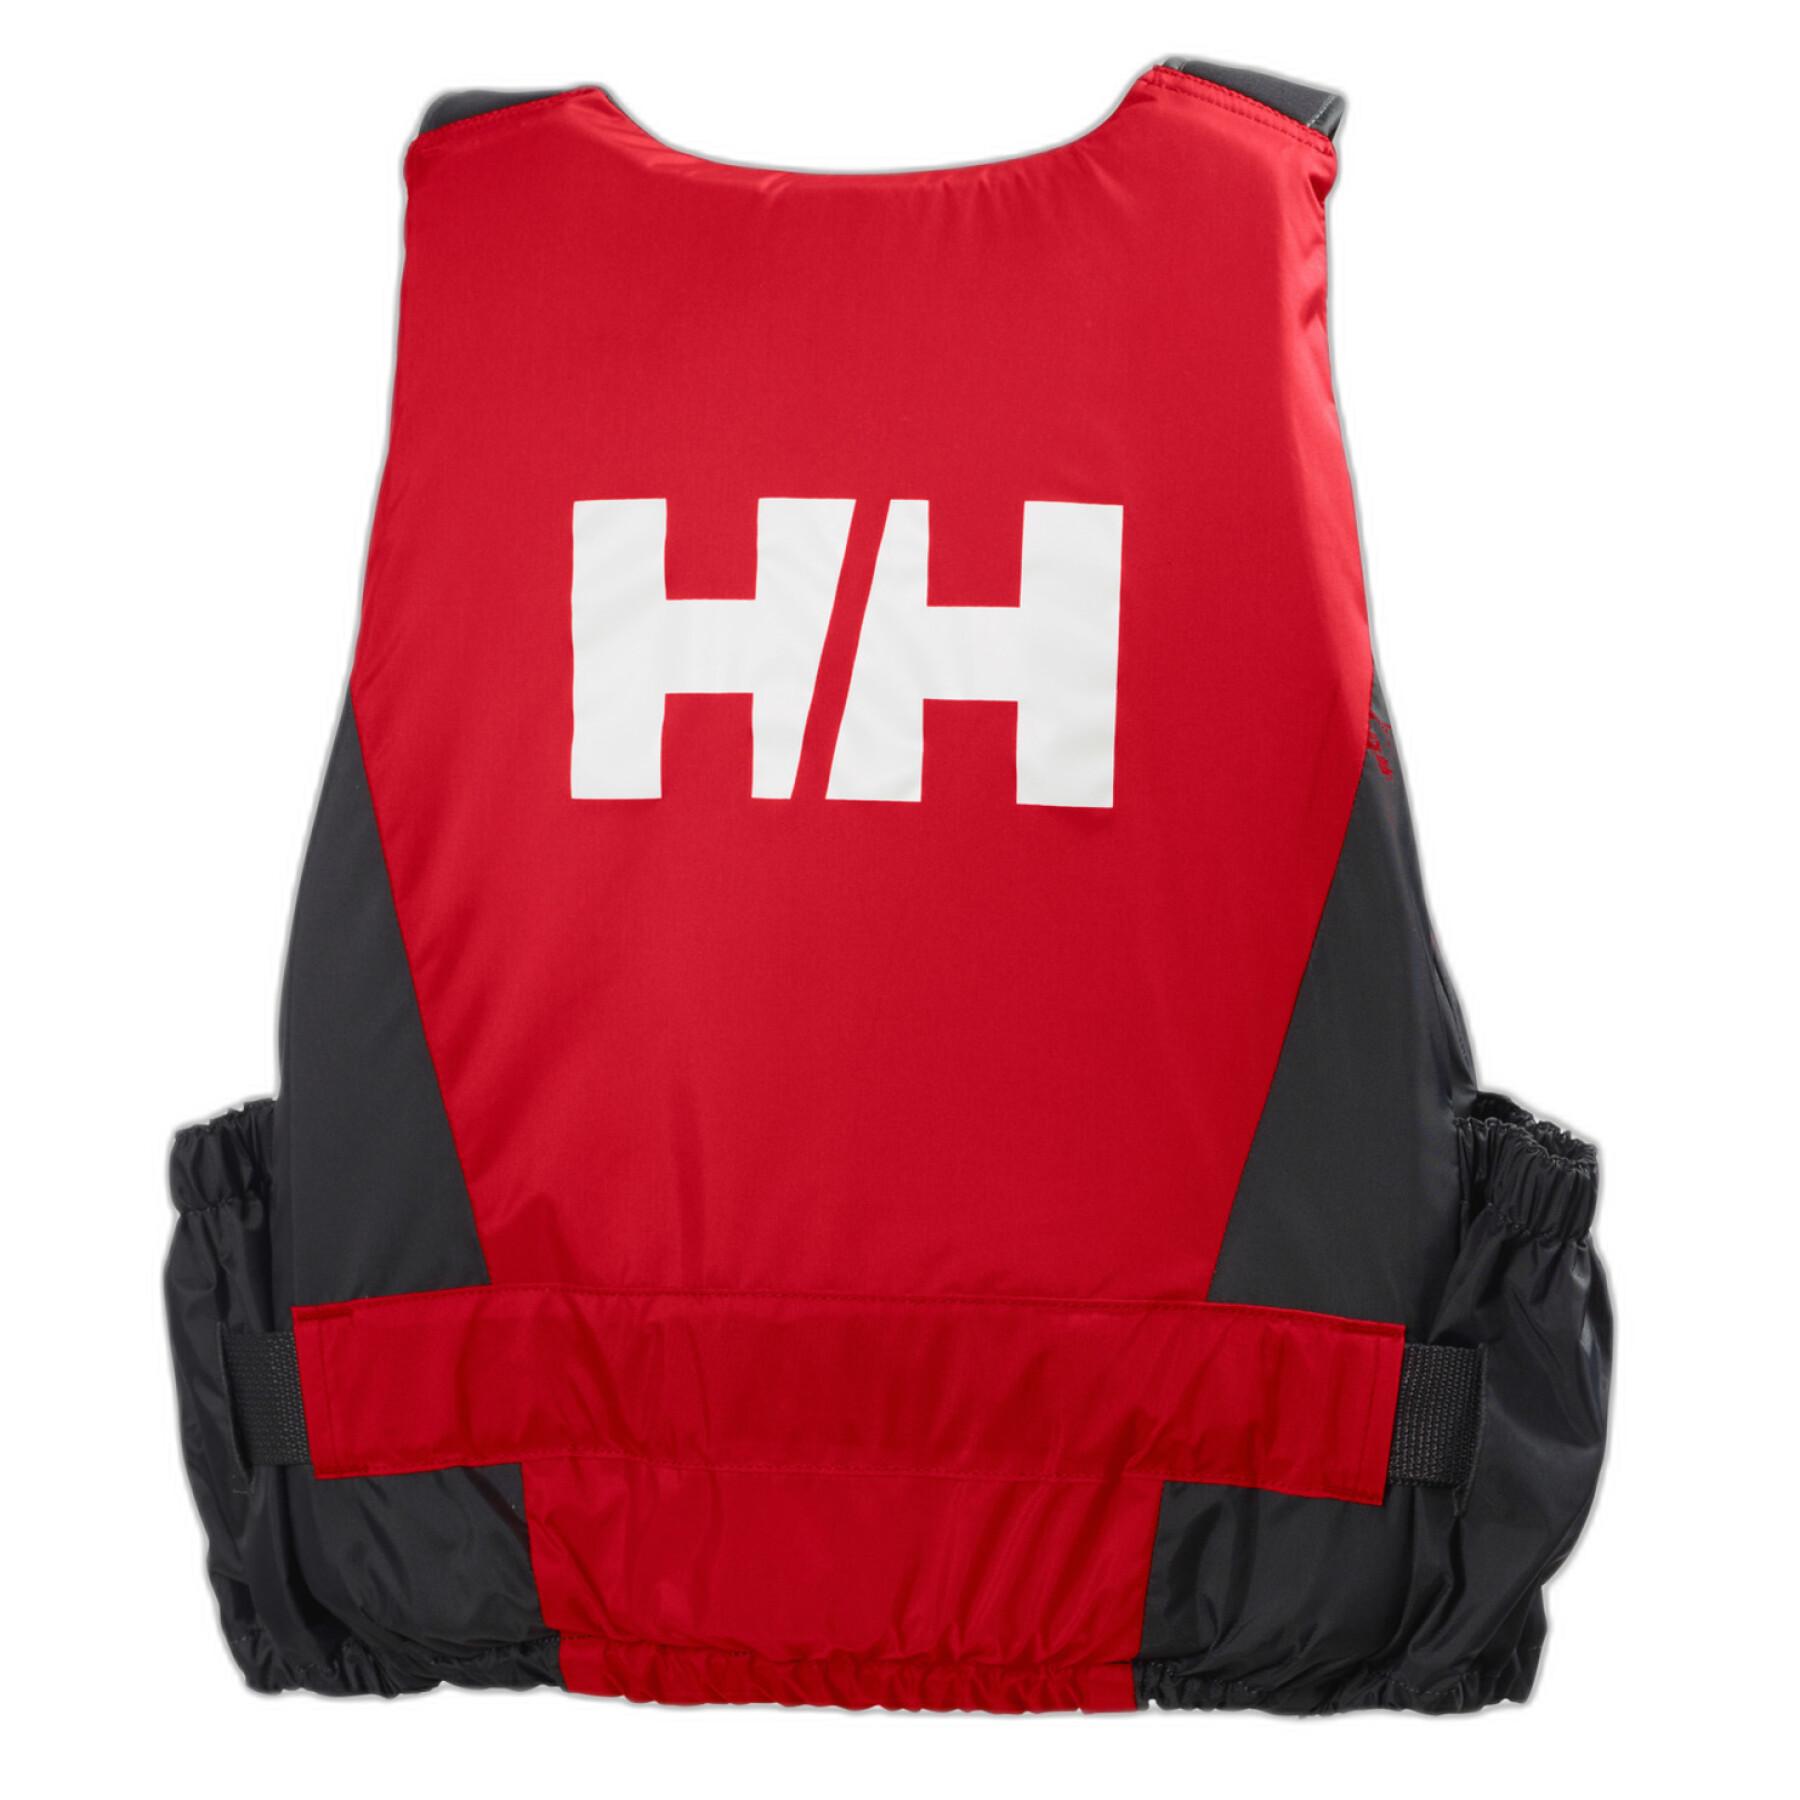 Lifejacket Helly Hansen rider